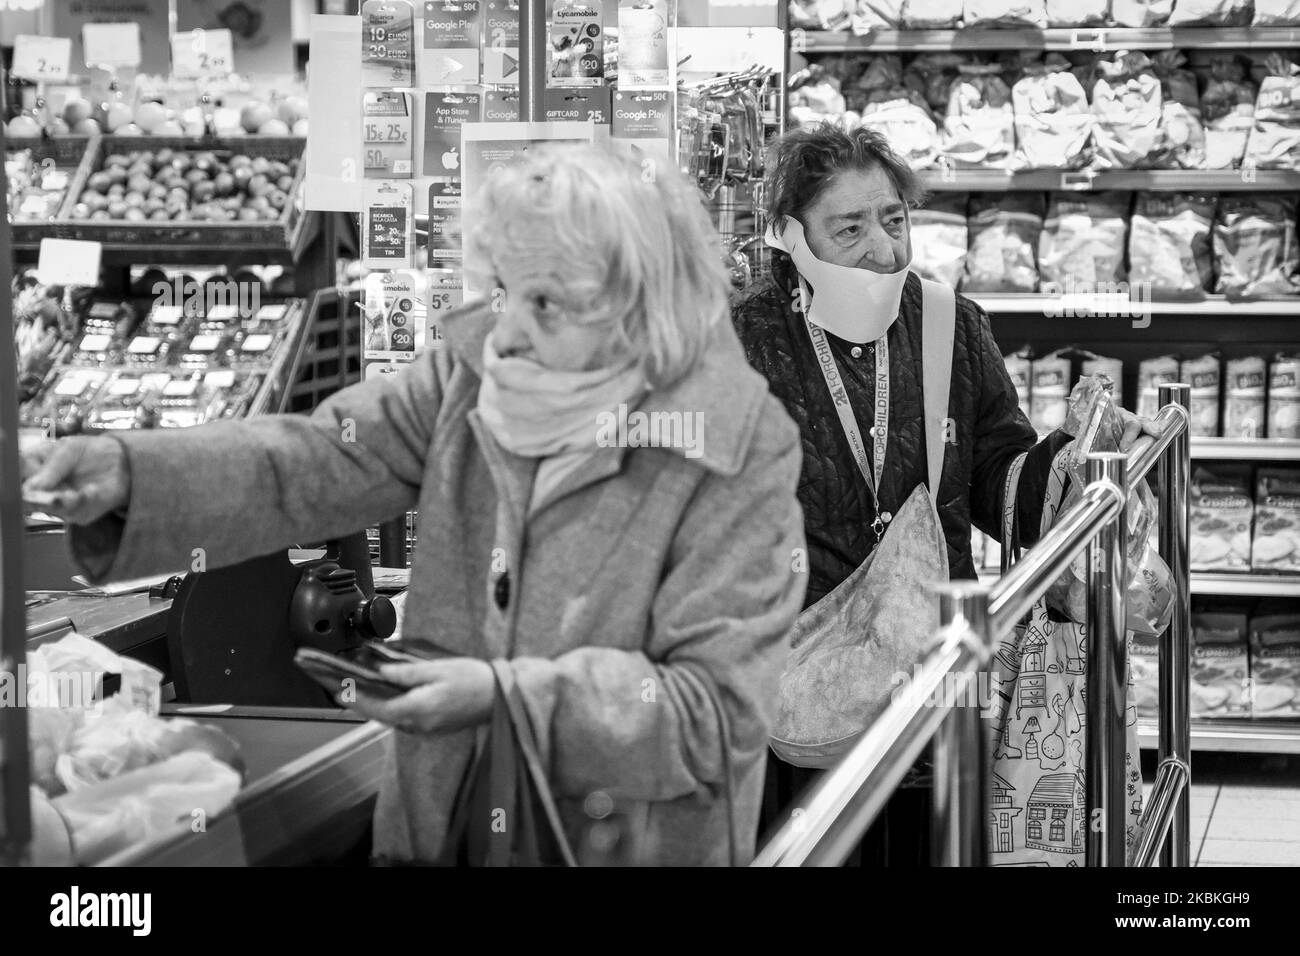 (NOTE DE LA RÉDACTION: L'image a été convertie en noir et blanc) les femmes âgées portant un masque facial de protection achètent des marchandises dans un magasin dans le centre de Padoue, en Italie, sur 25 mars 2020. (Photo de Roberto Silvino/NurPhoto) Banque D'Images